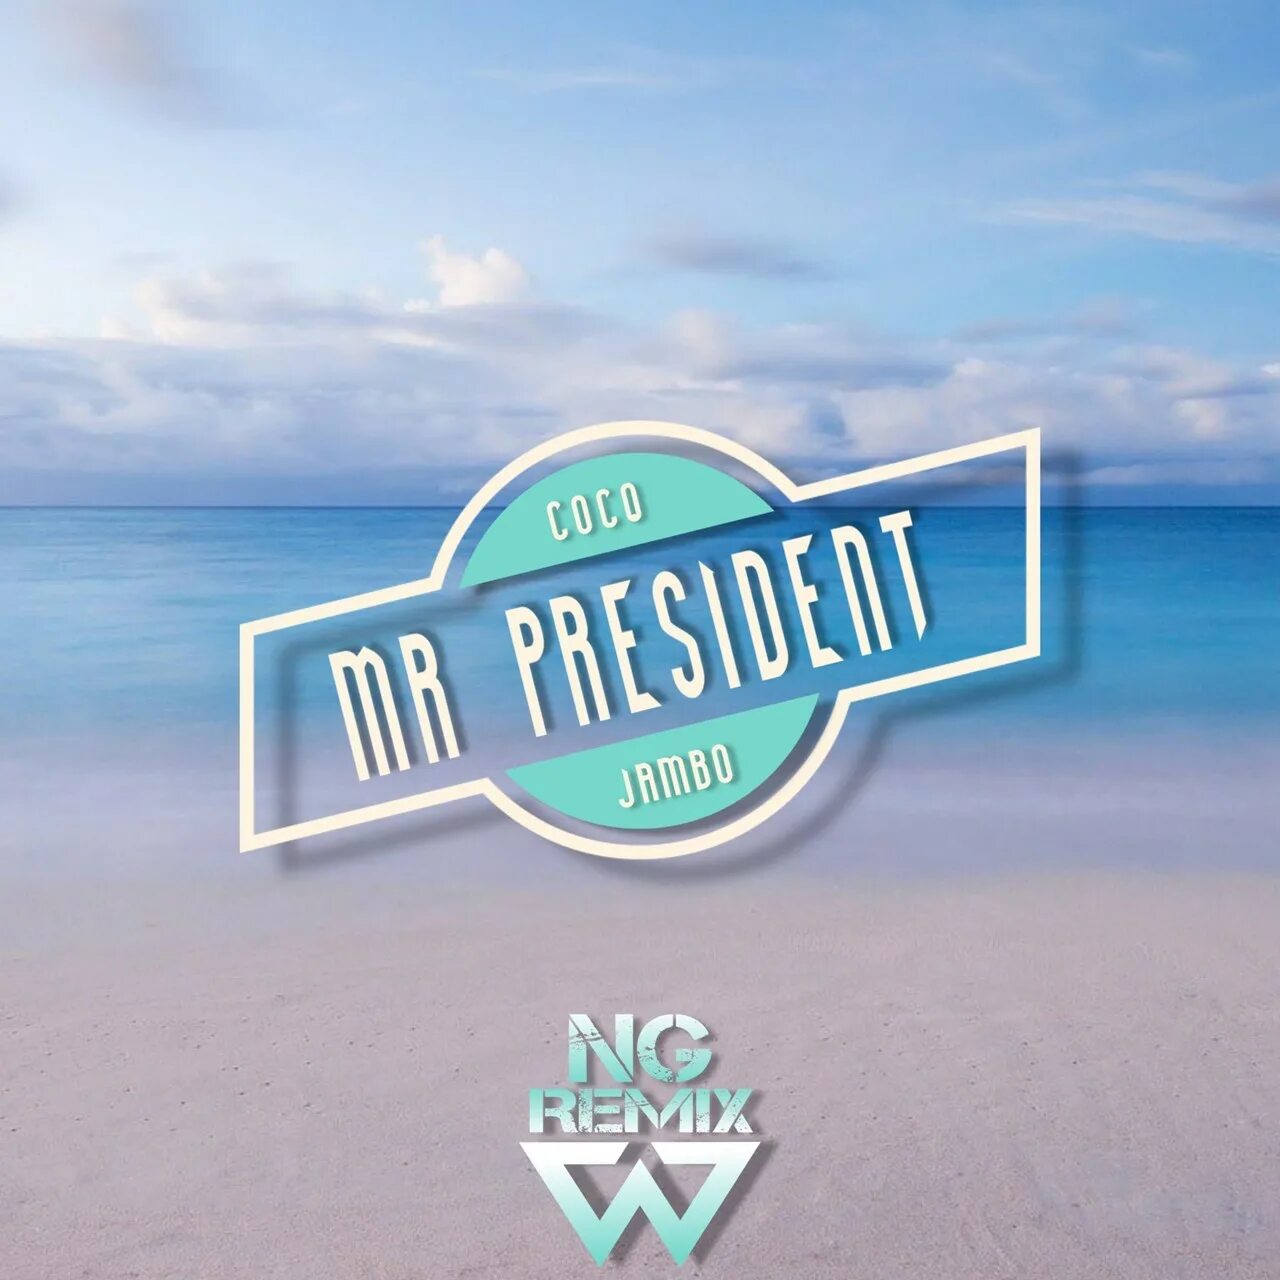 Coco jambo remix. Coco Jamboo Mr. President. Коко джамбо ремикс. Mister President Coco. Mr.President - Coco Jambo (Remix).